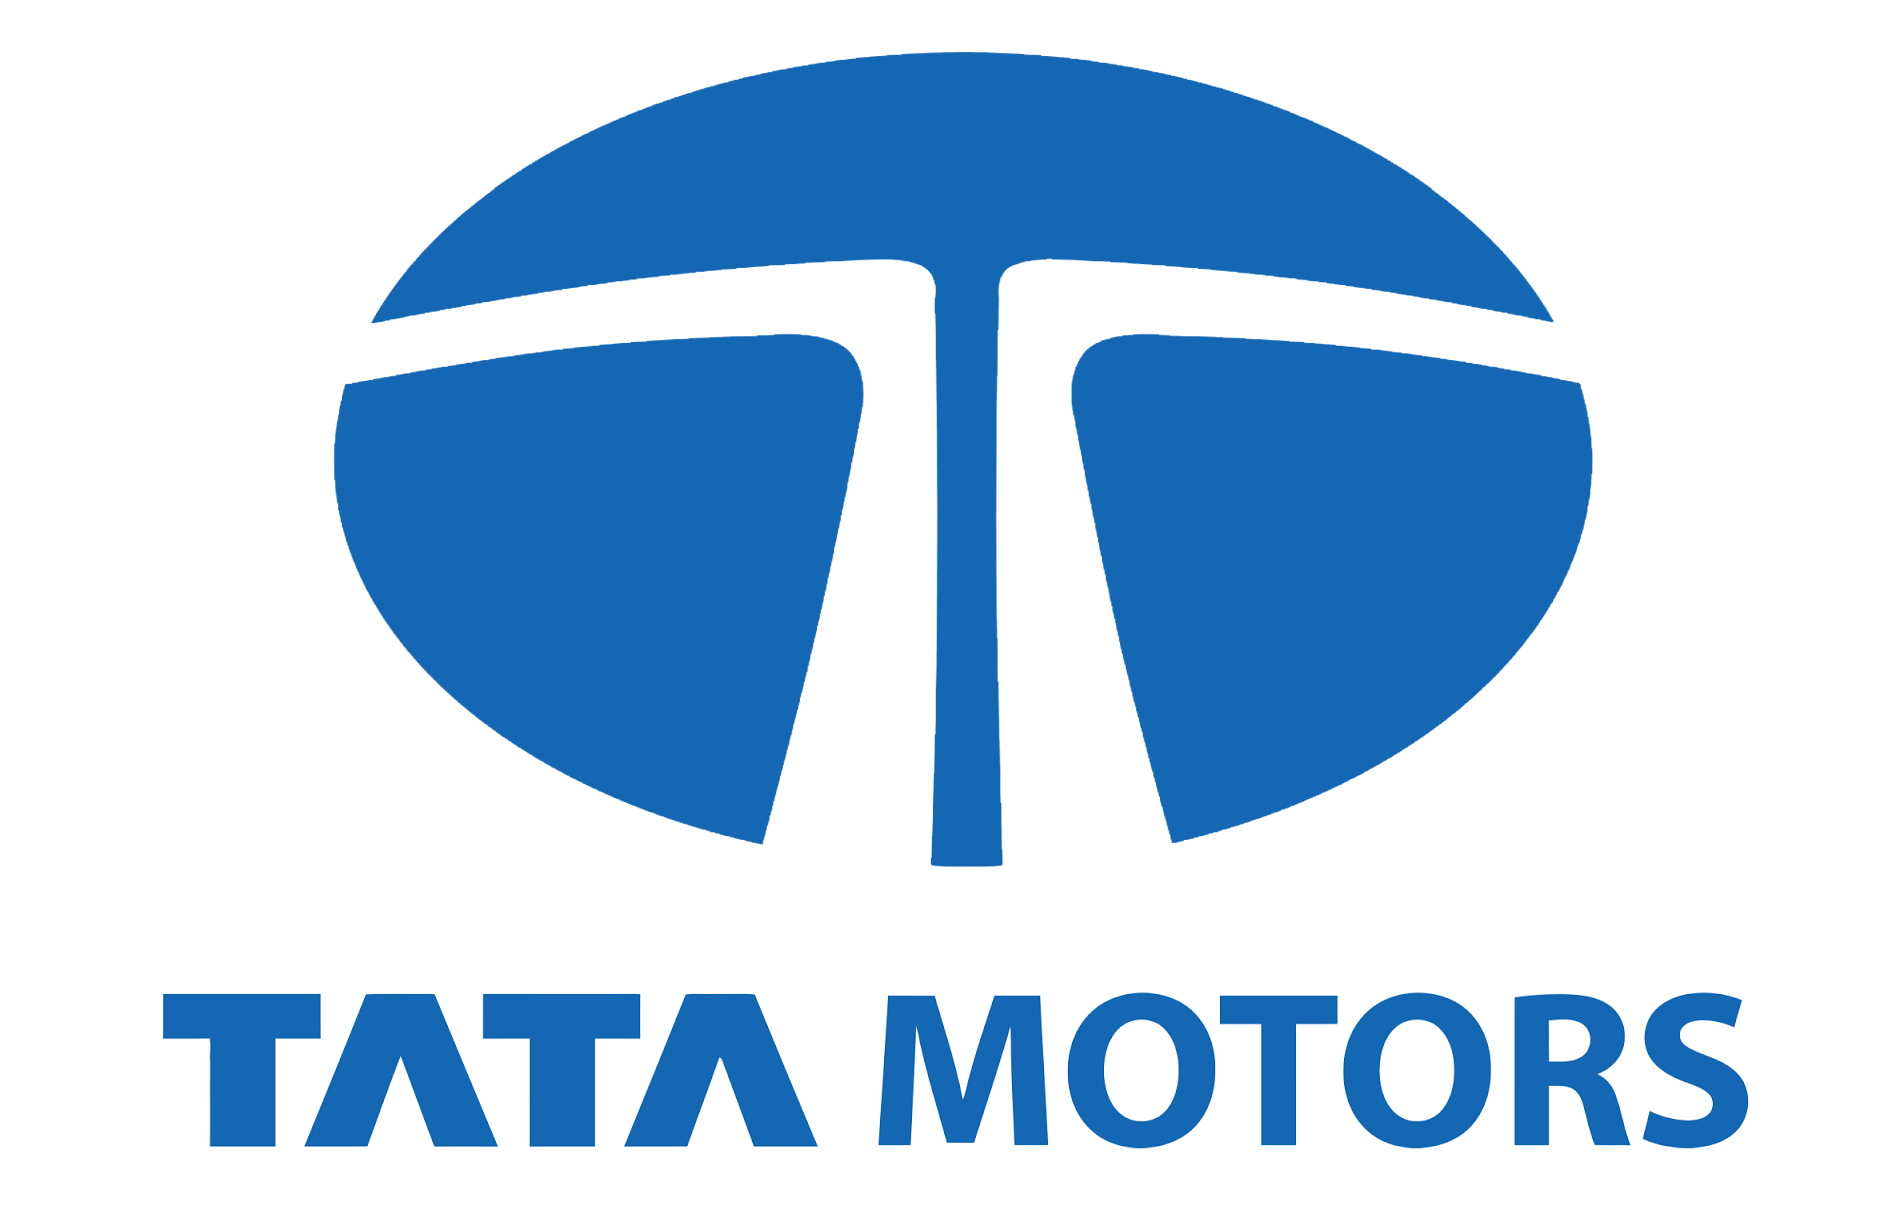 Tata Motors Logo | Motor logo, Tata motors logo, Tata motors